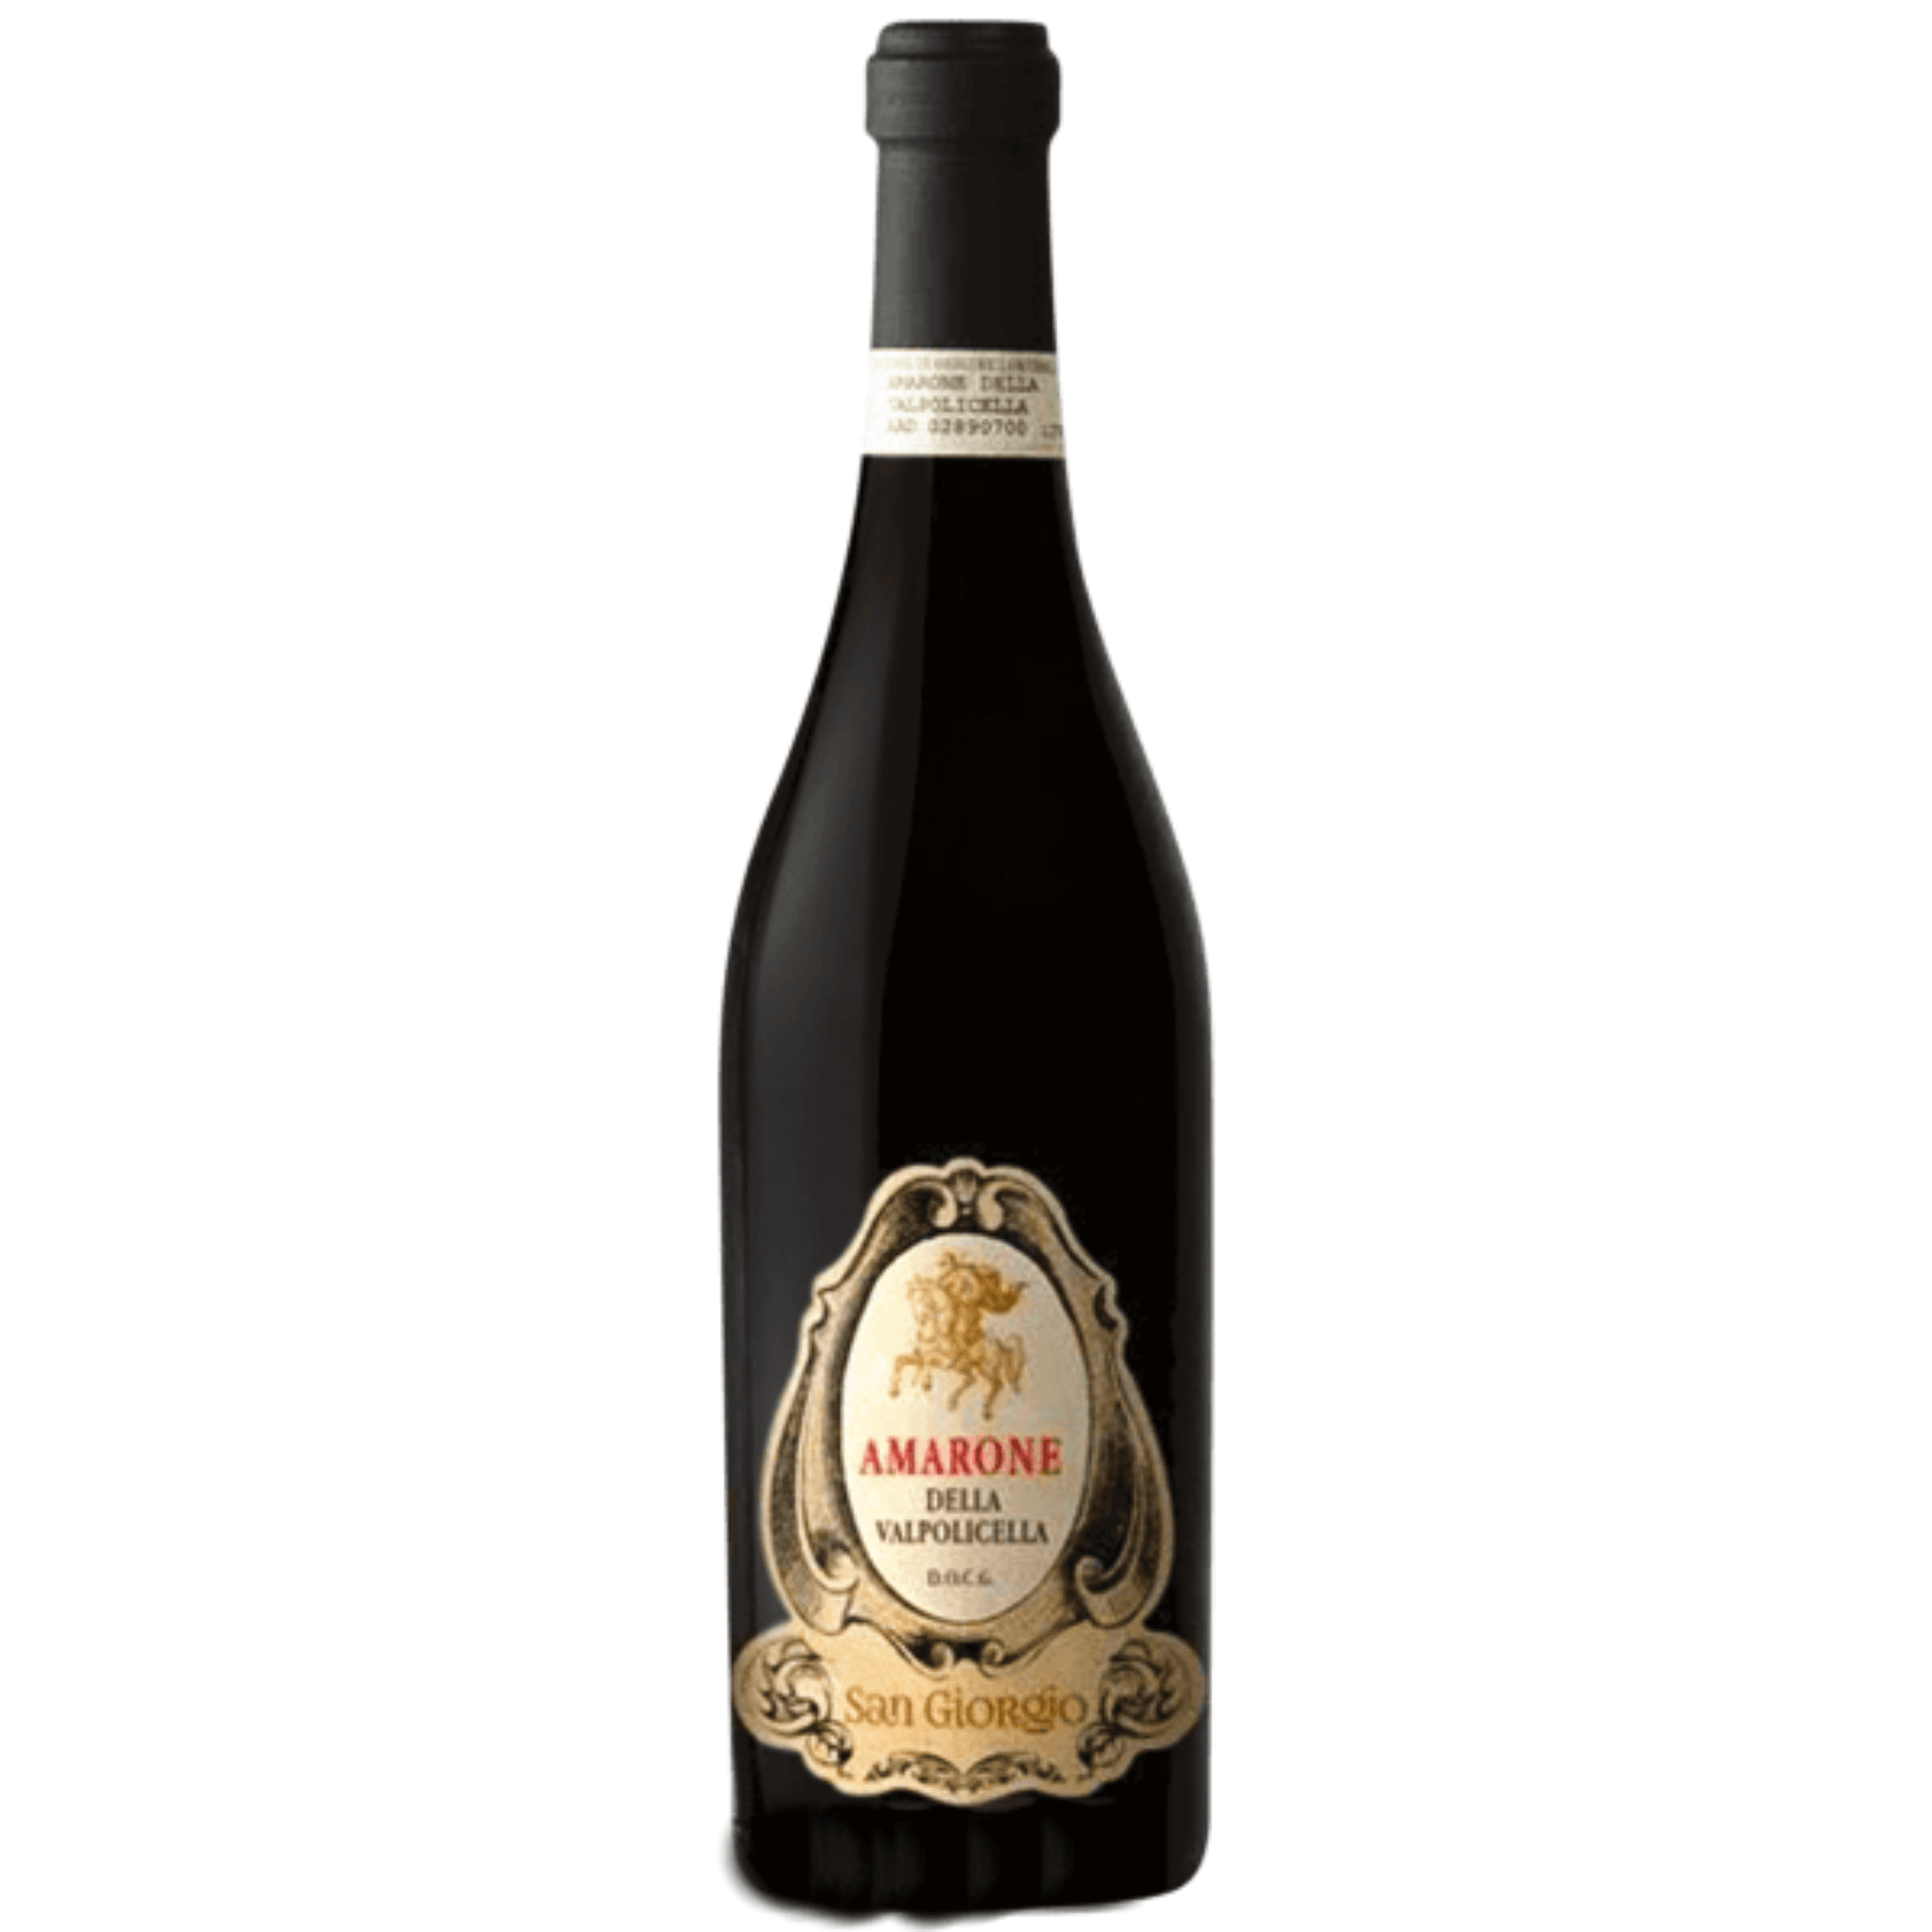 Bottiglia da 0,75 l di Amarone della Valpolicella San Giorgio, cantina Bennati.